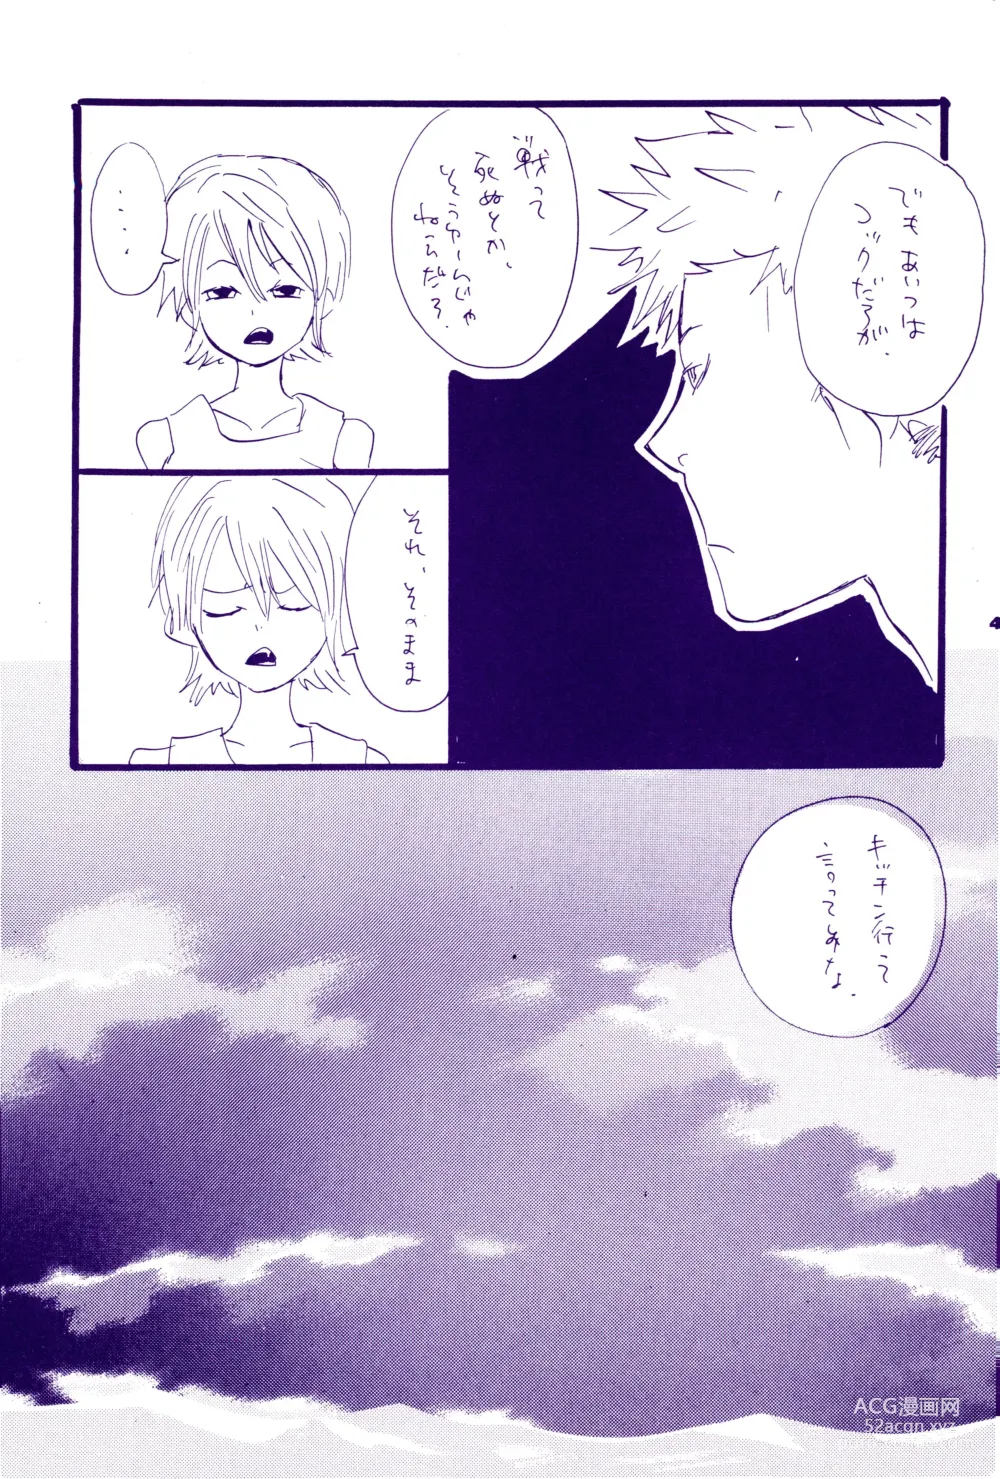 Page 15 of doujinshi Kowareta Mono no Honto no Katachi 2